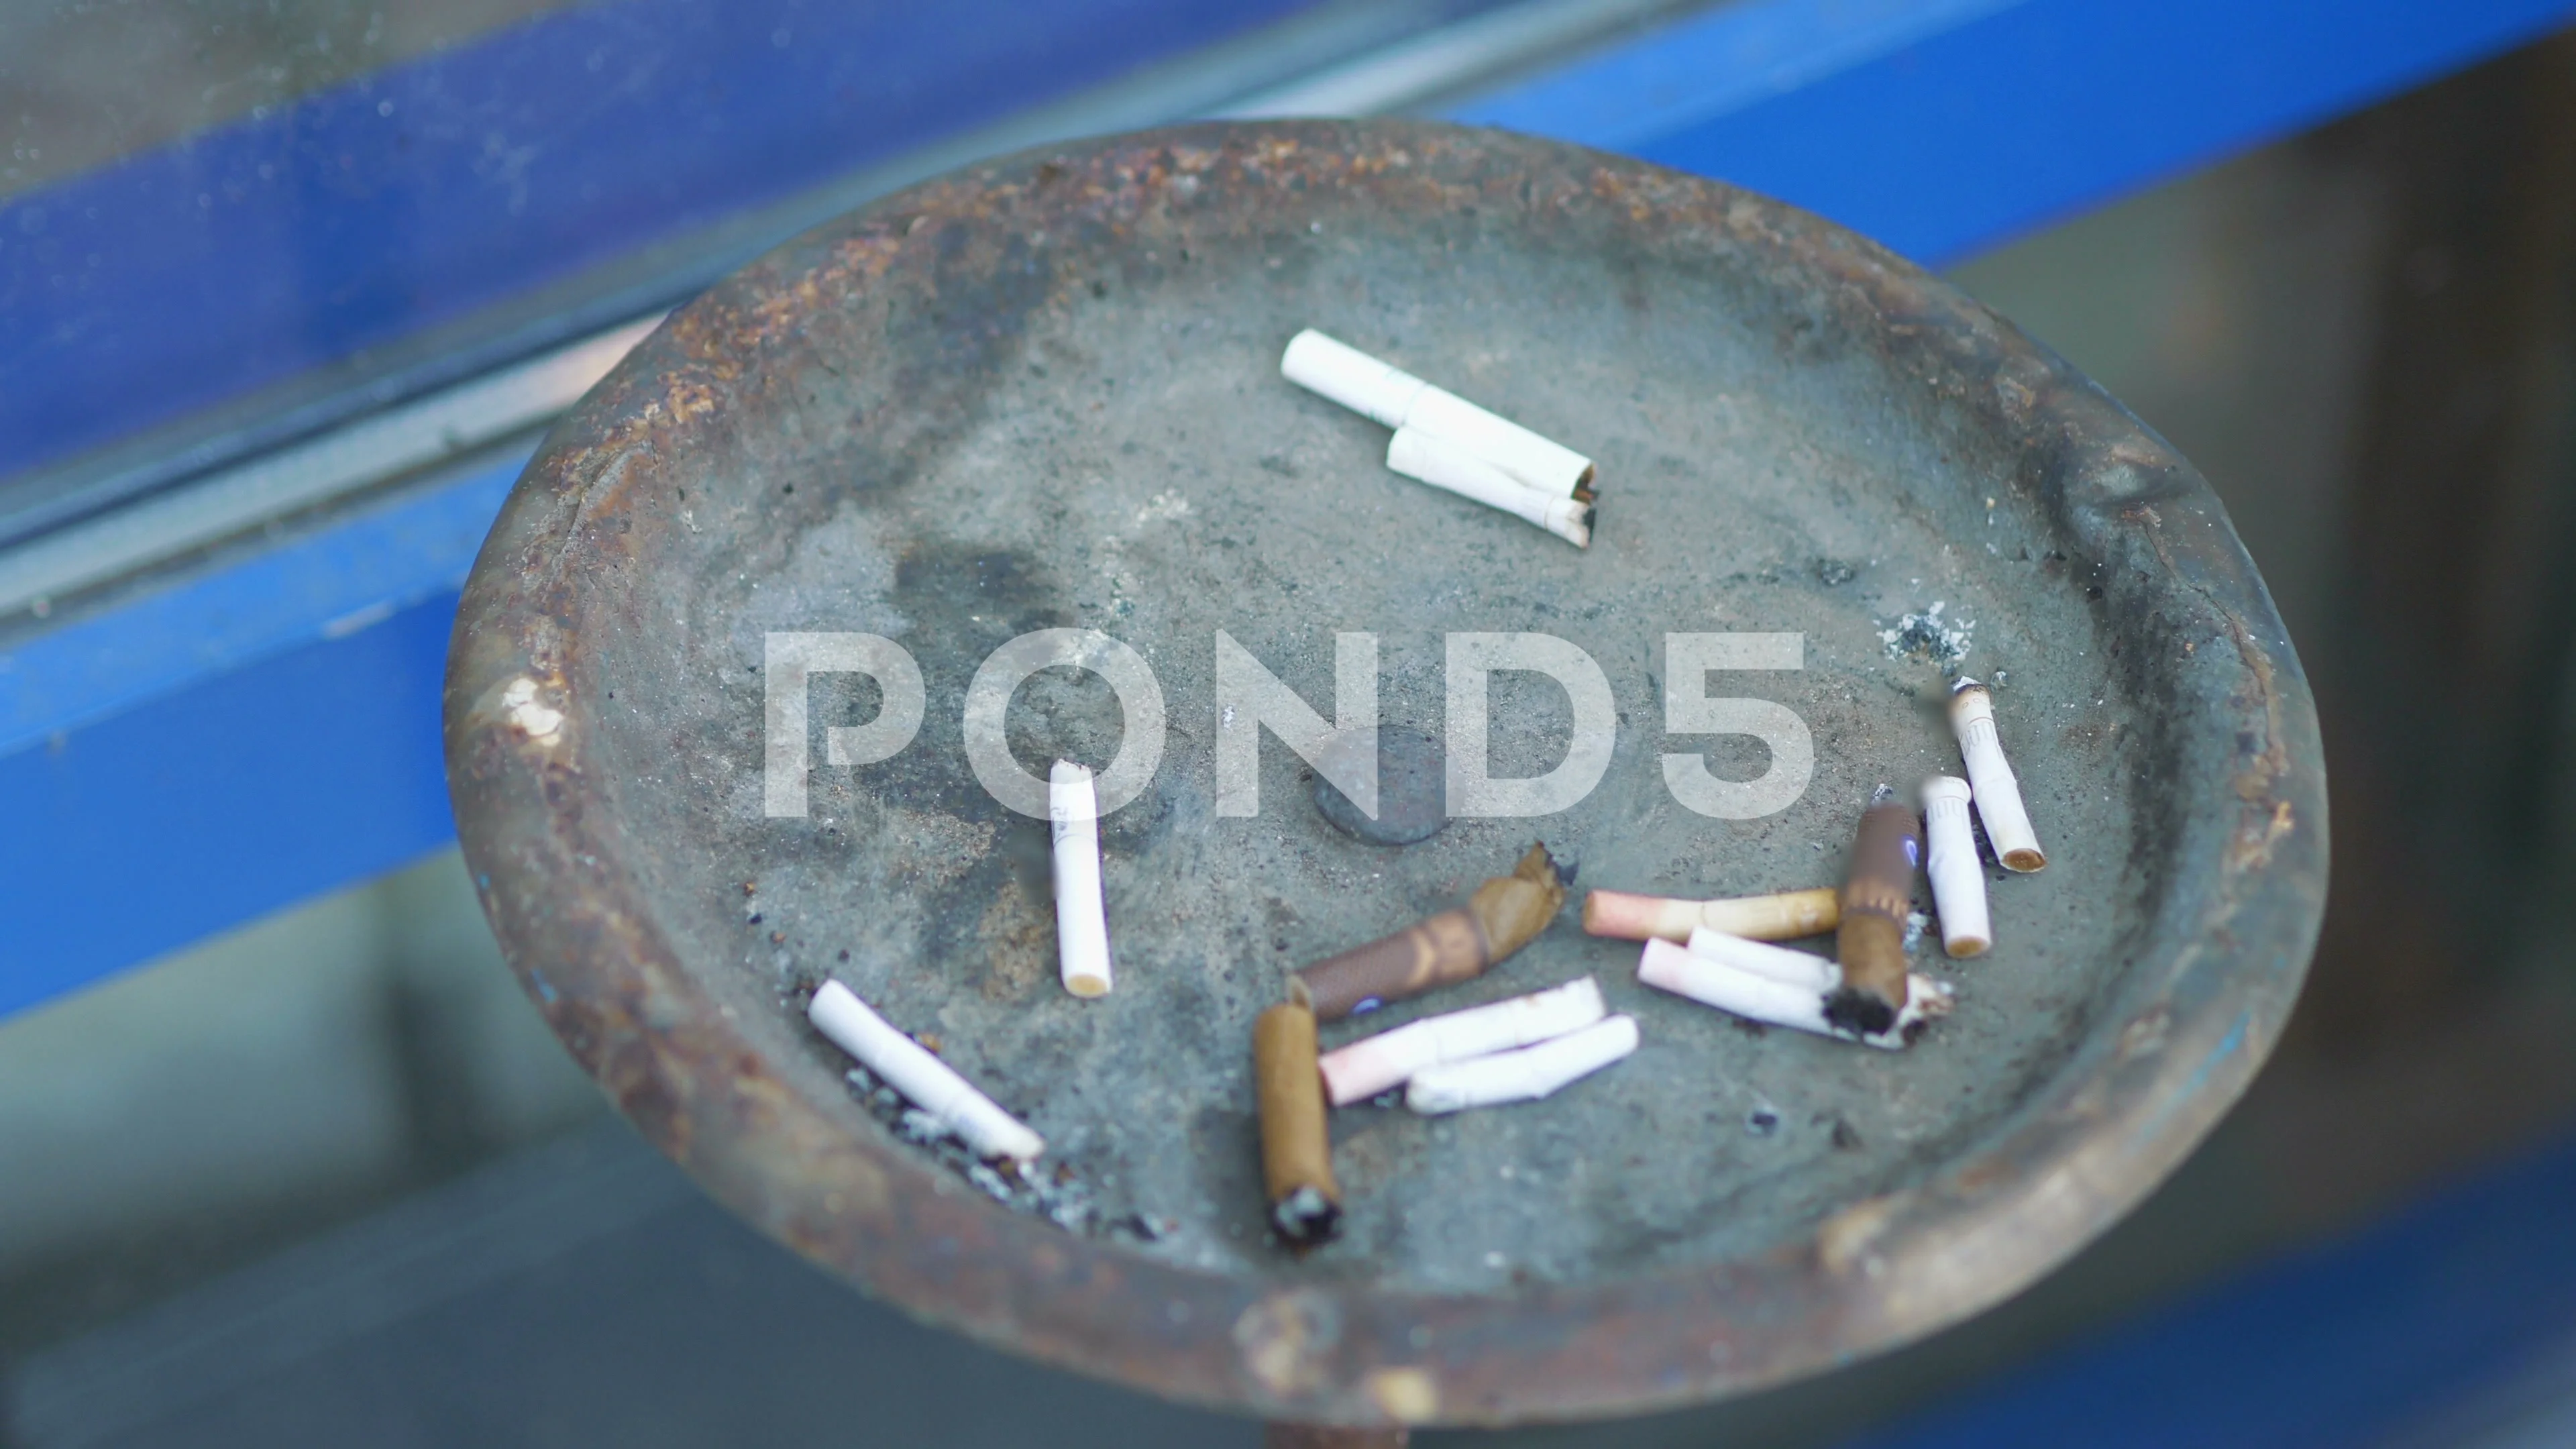 Cigarette sticks in an ashtray in 4k slo, Stock Video